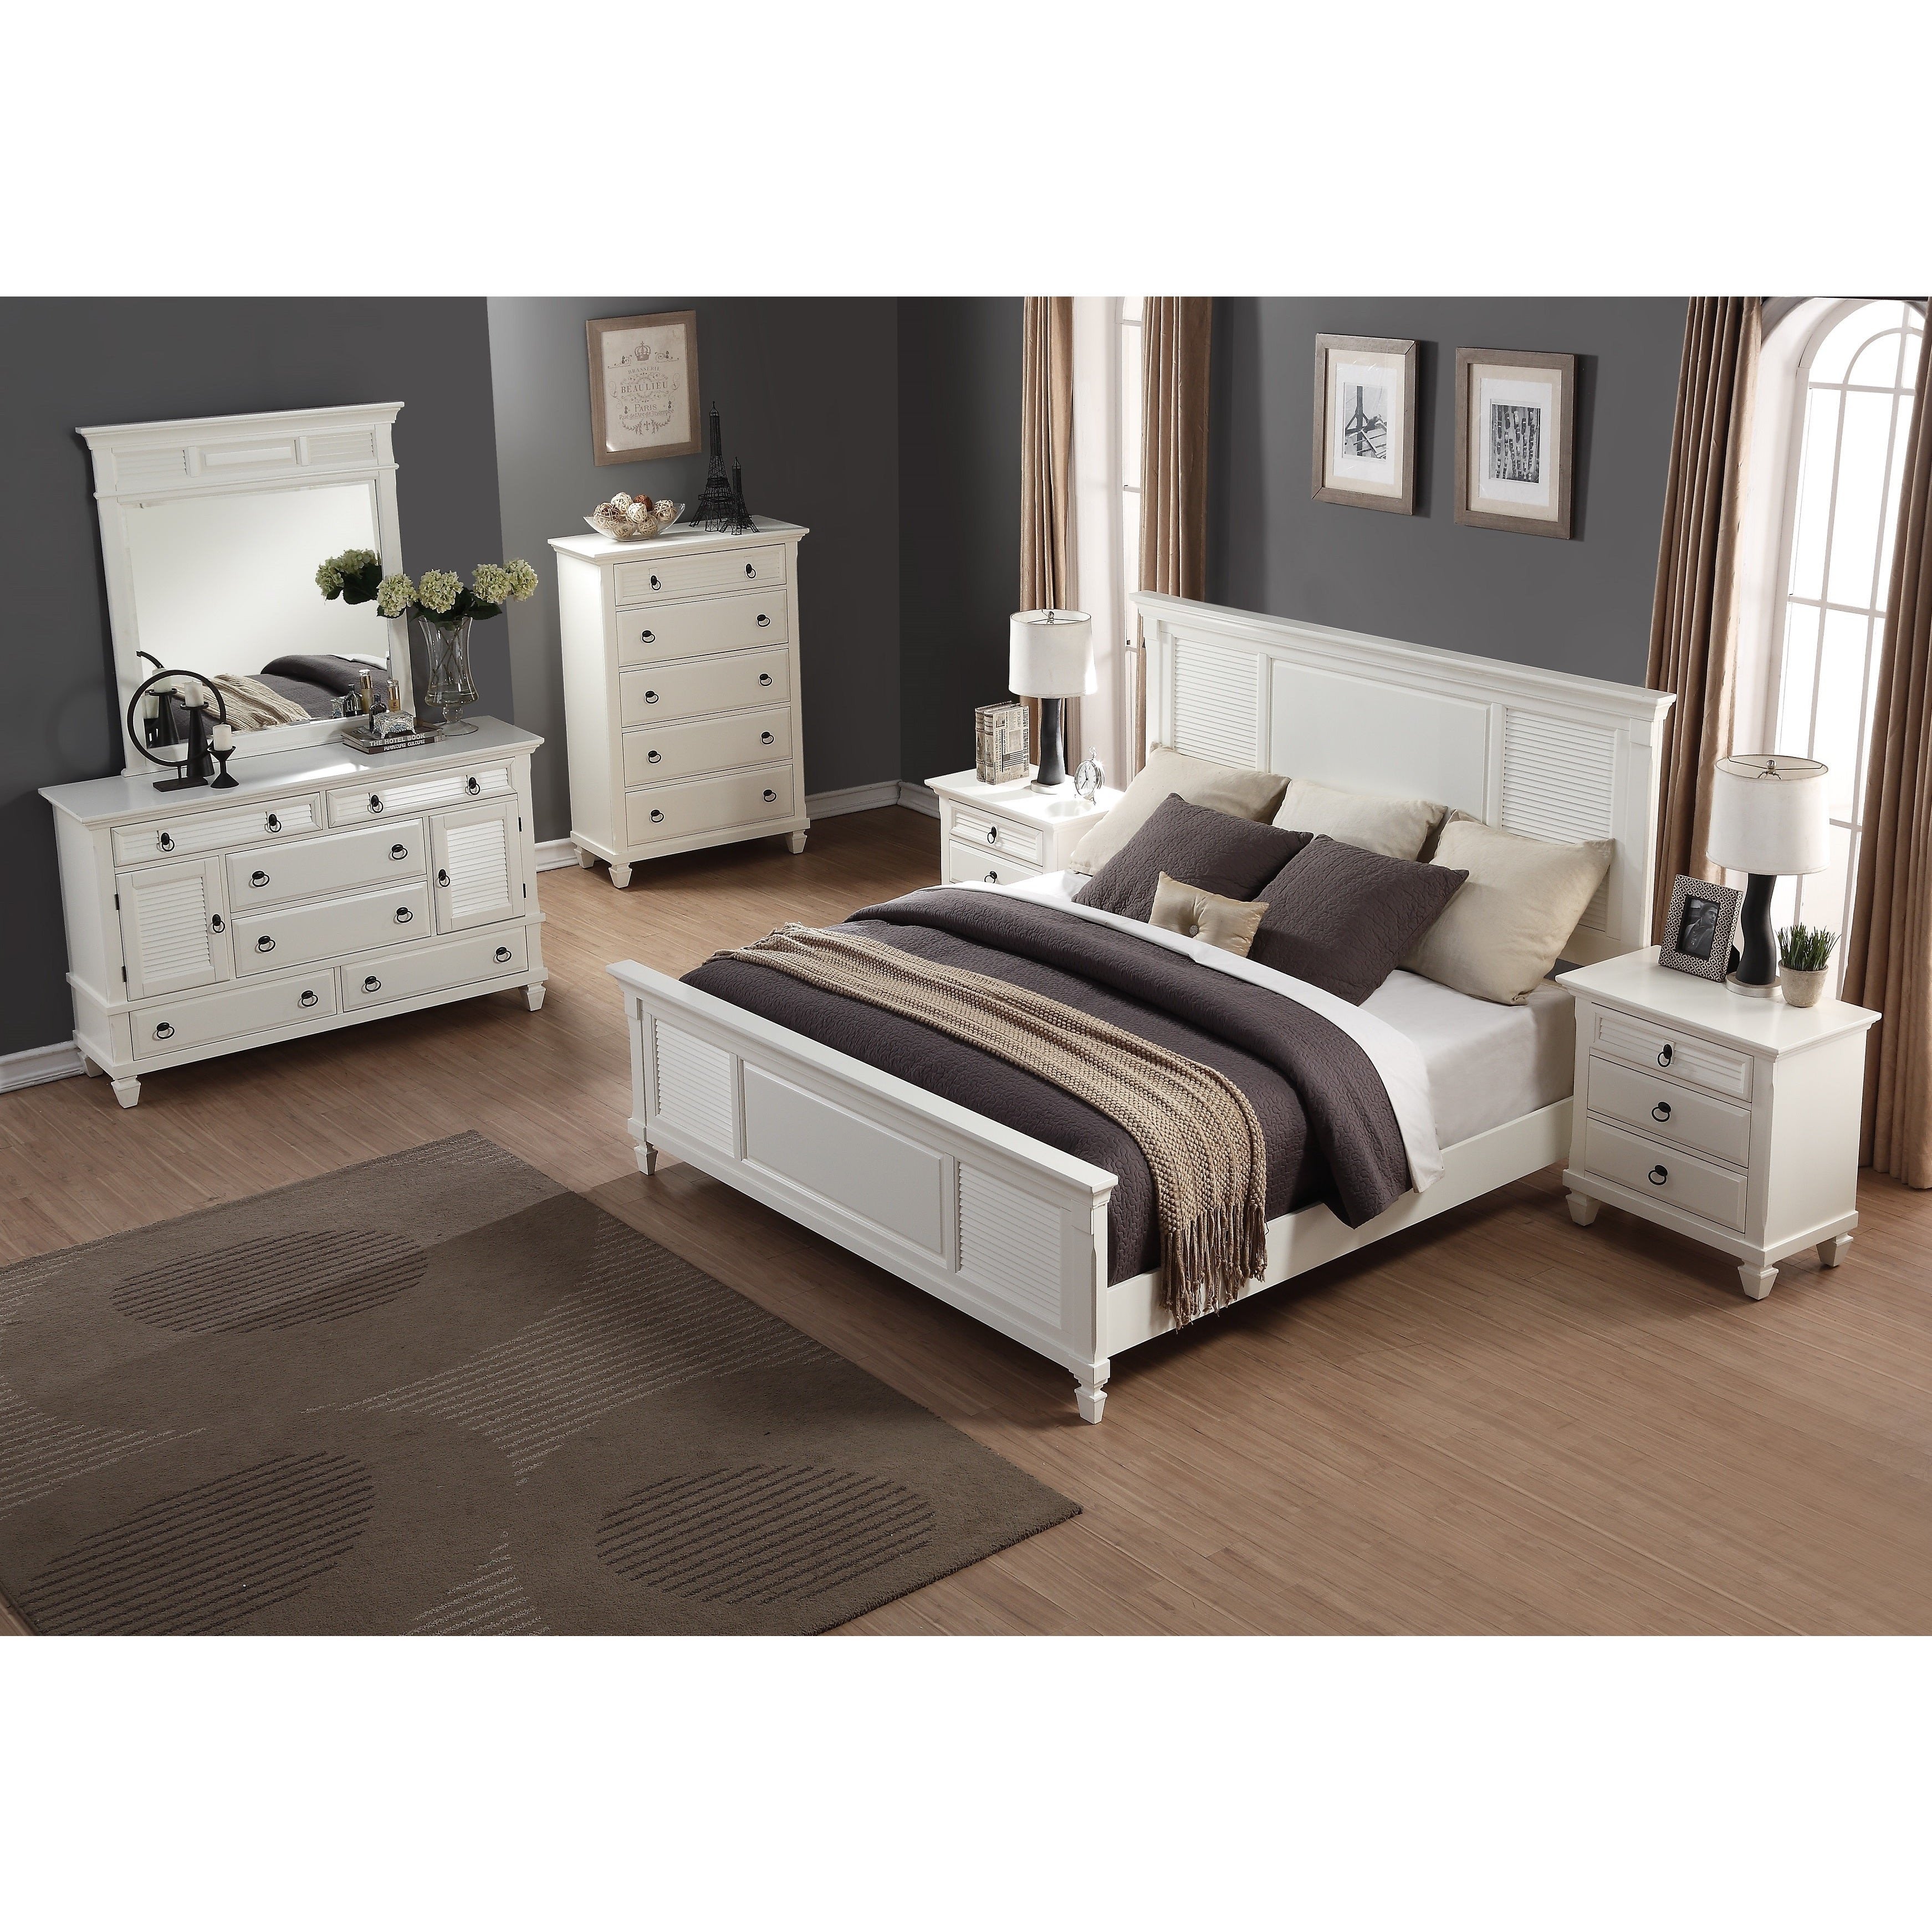 4 Piece Queen Bedroom Set Luxury Regitina White 6 Piece Queen Size Bedroom Furniture Set